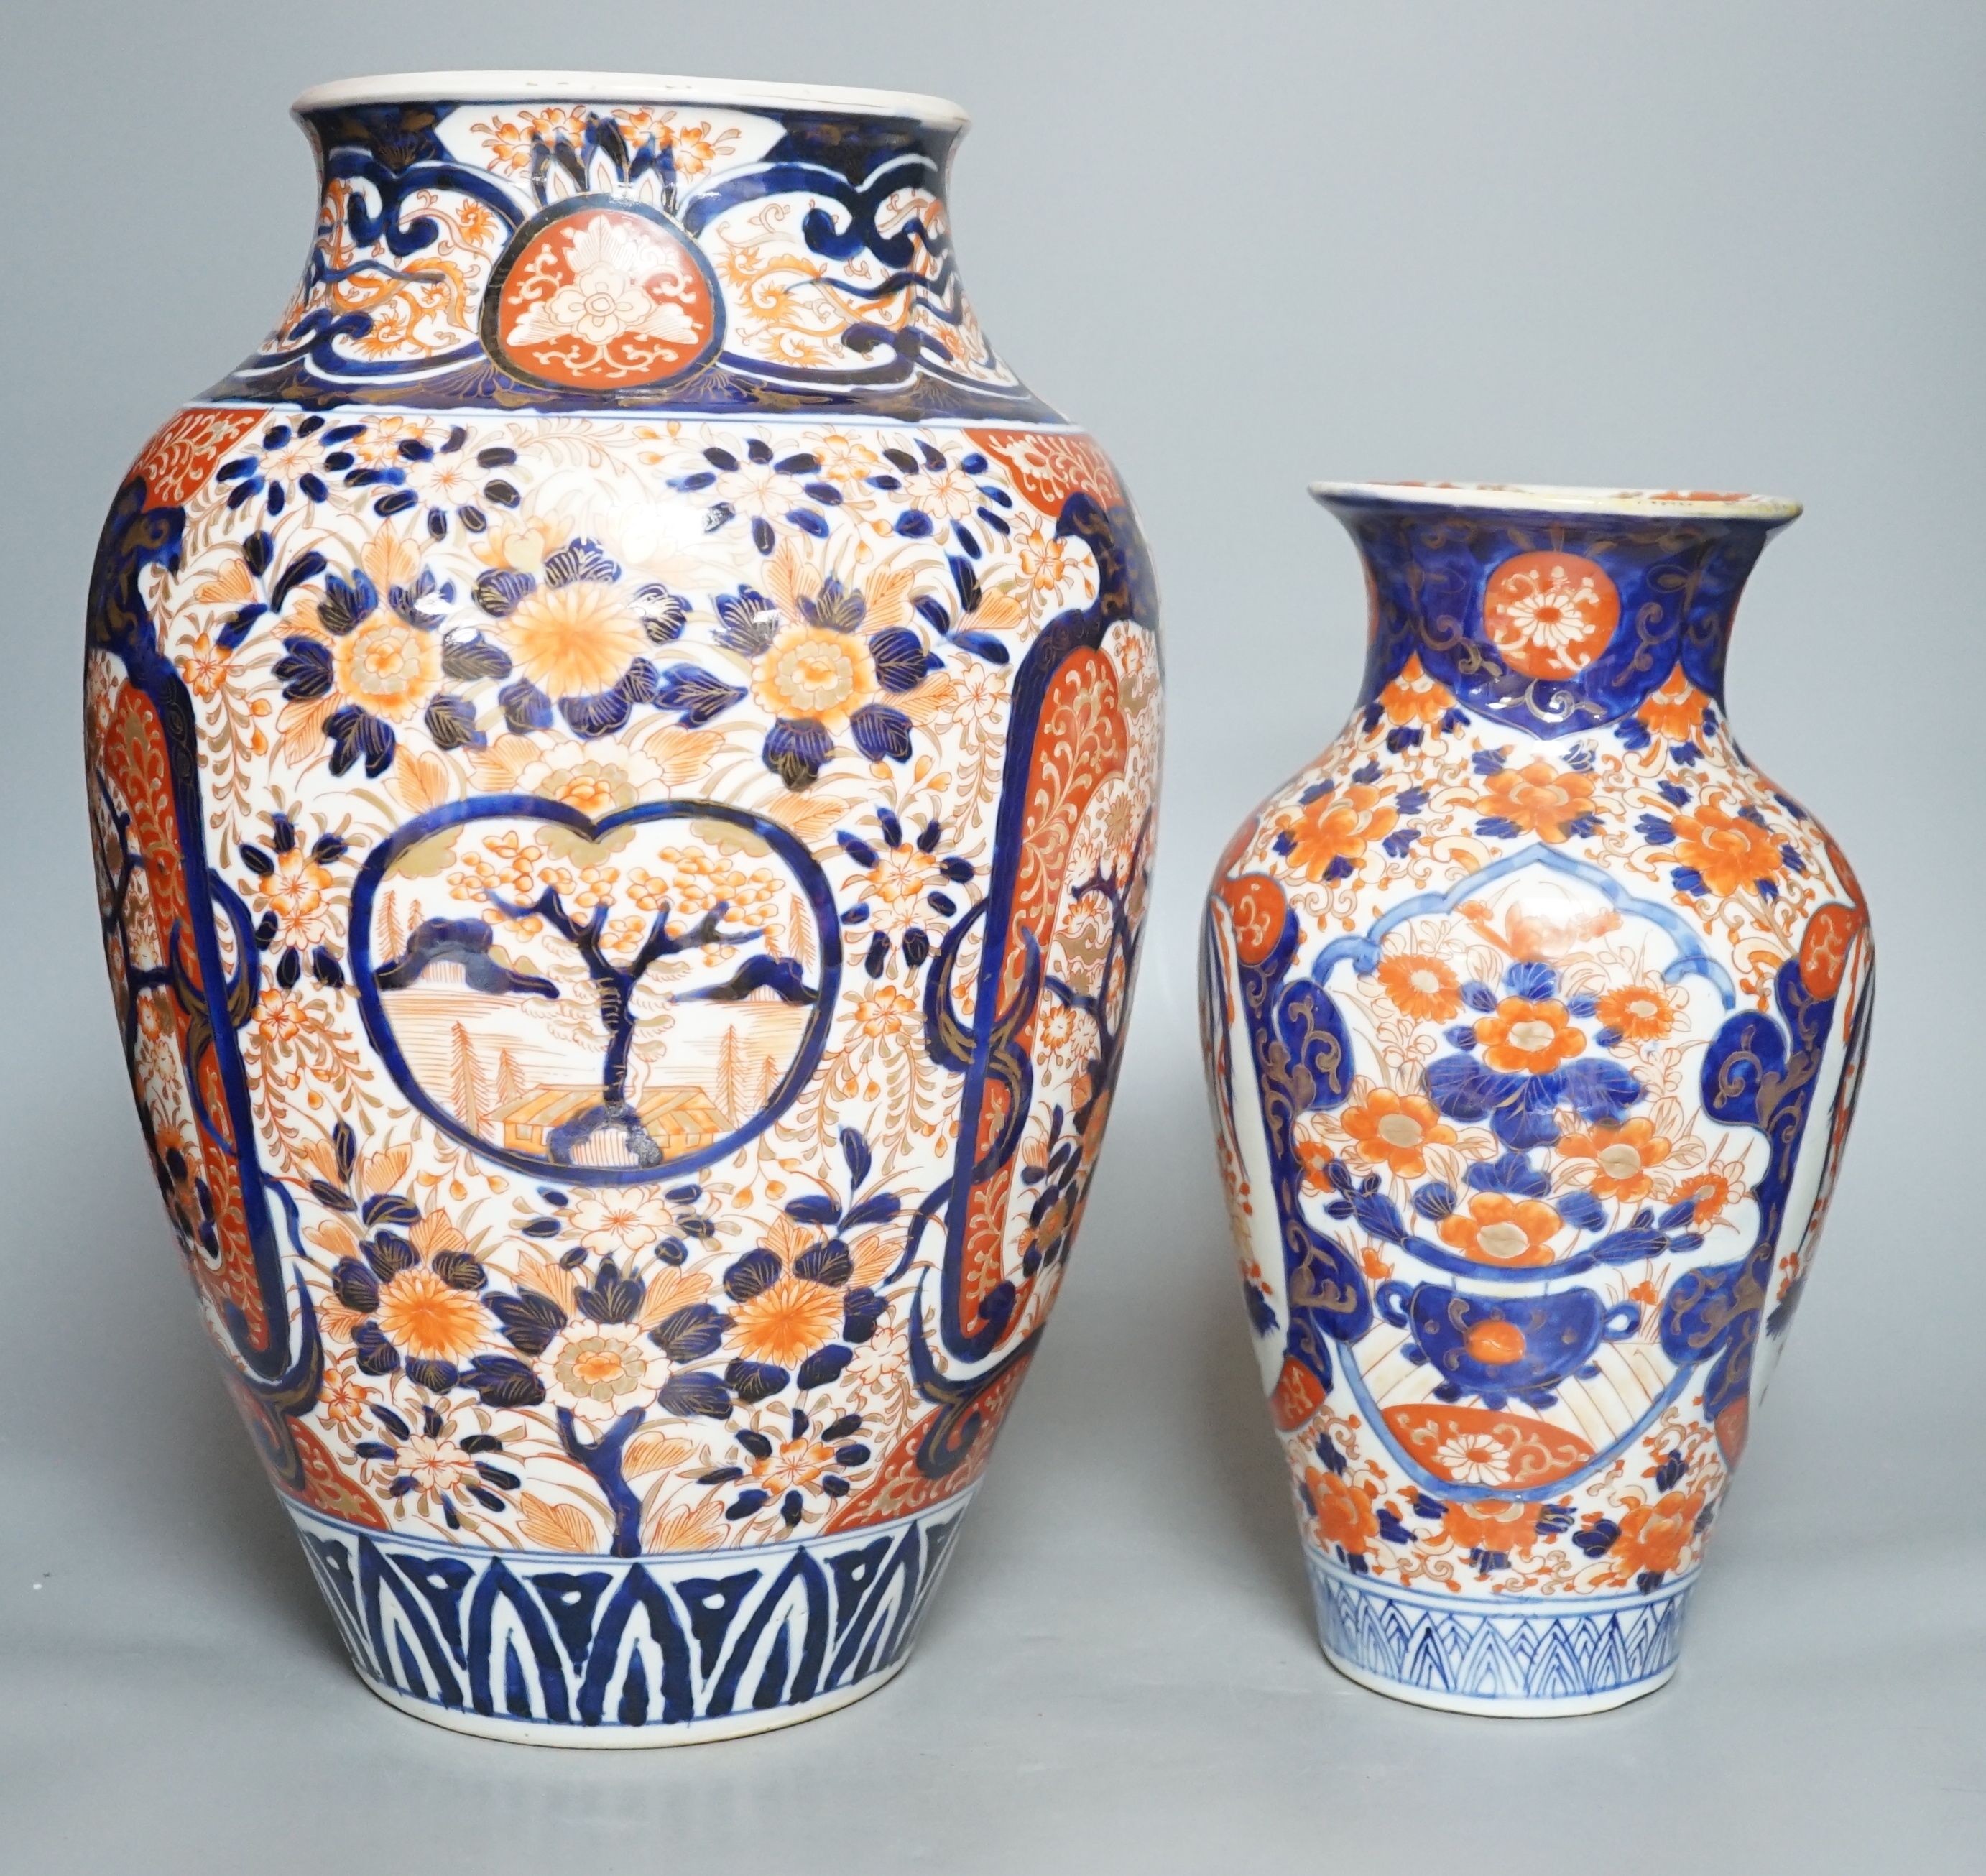 Two Japanese Imari vases, tallest 38cm